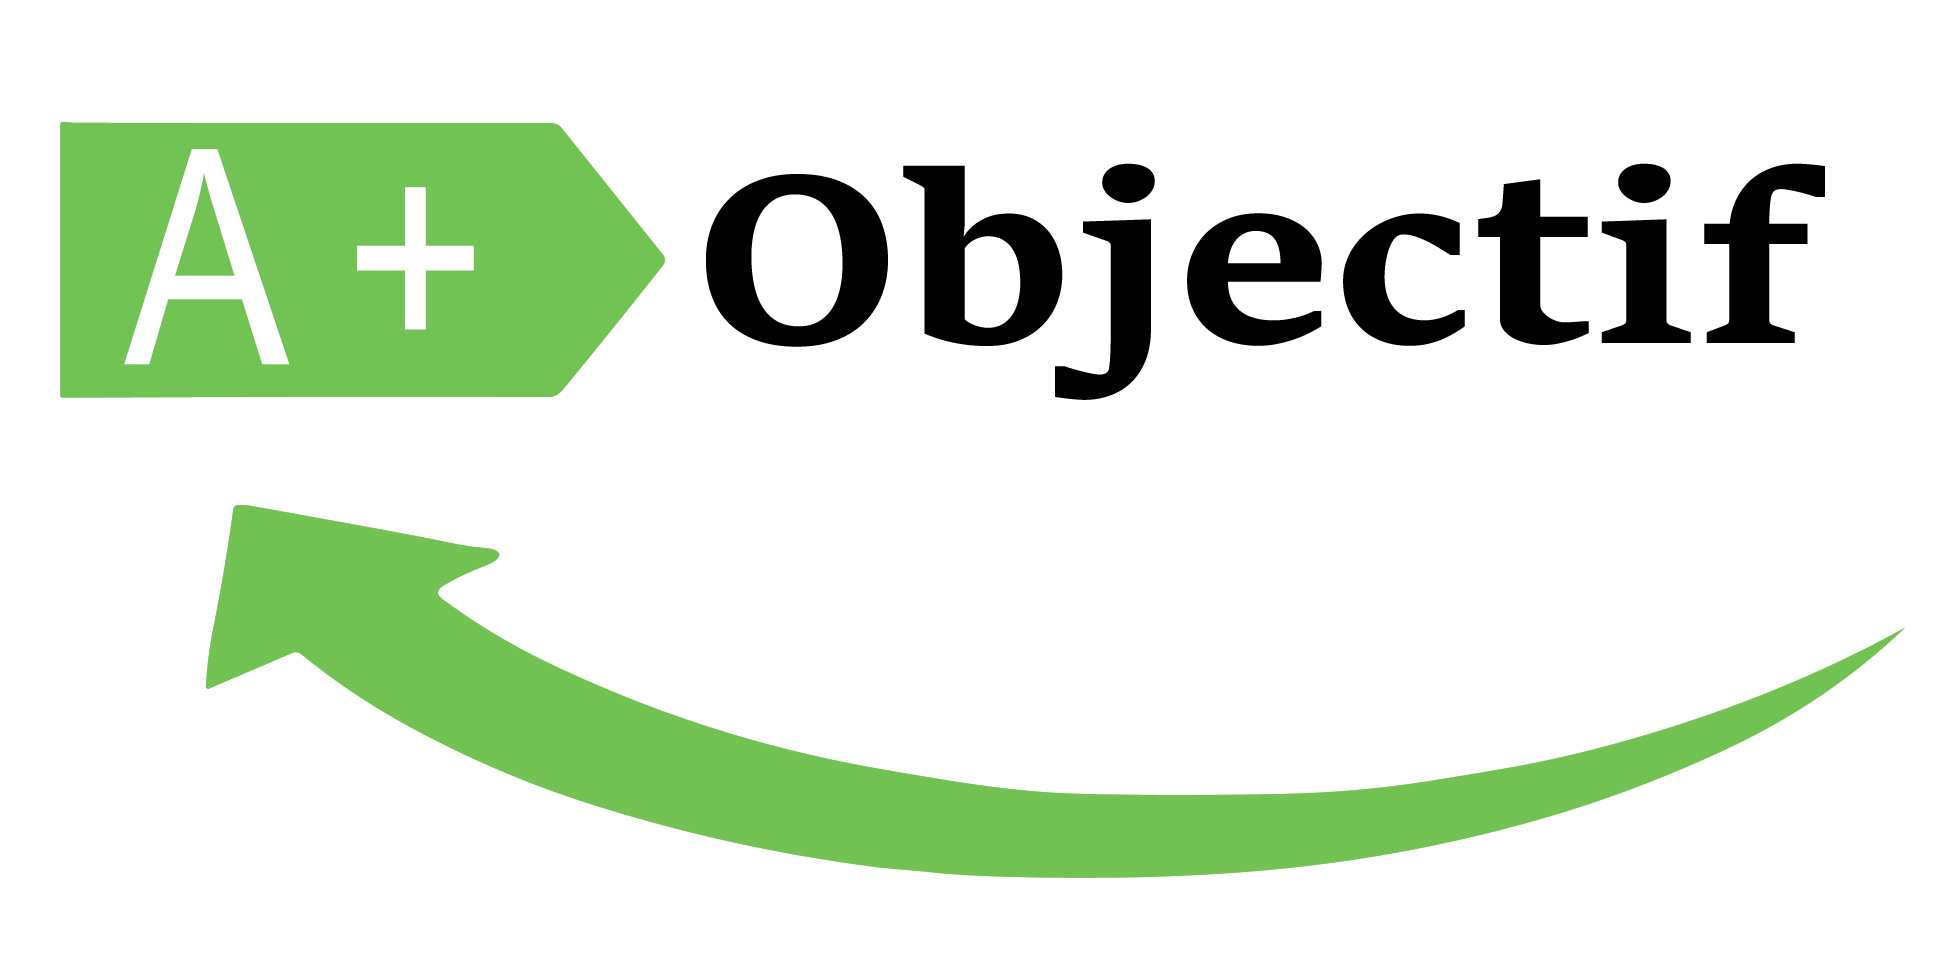 A+ Objectif